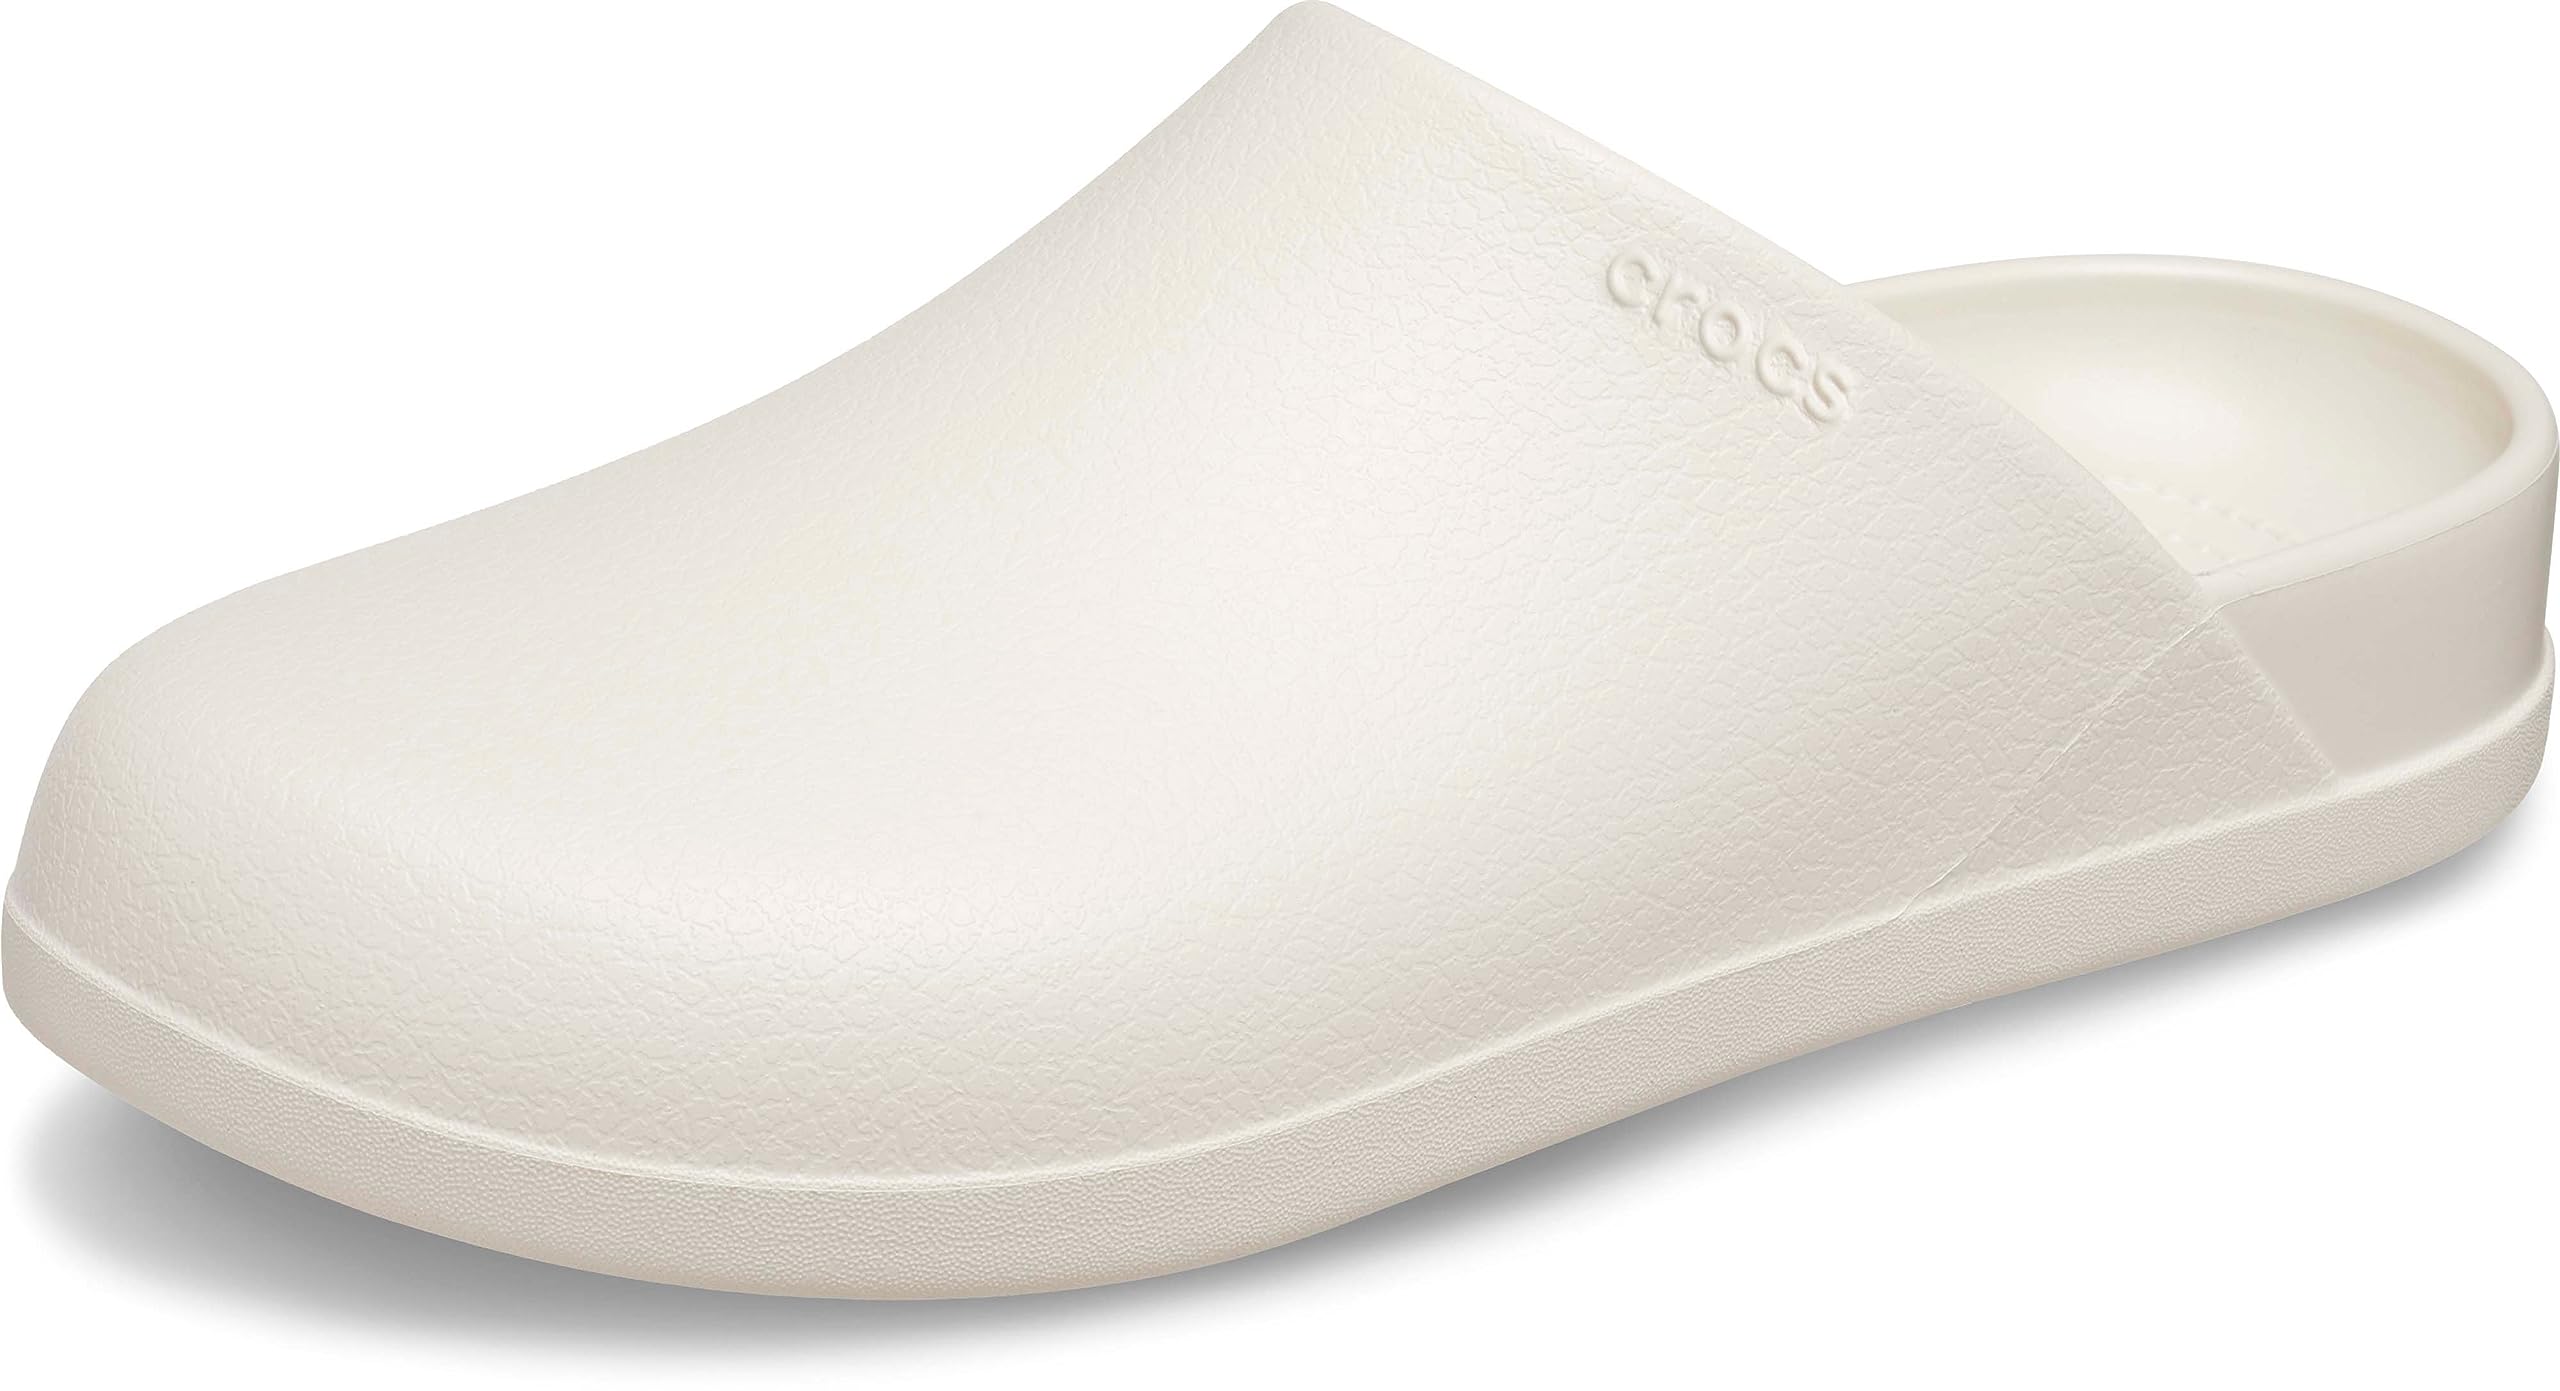 Crocs Unisex-Adult Dylan Mules Clogs-Shoes